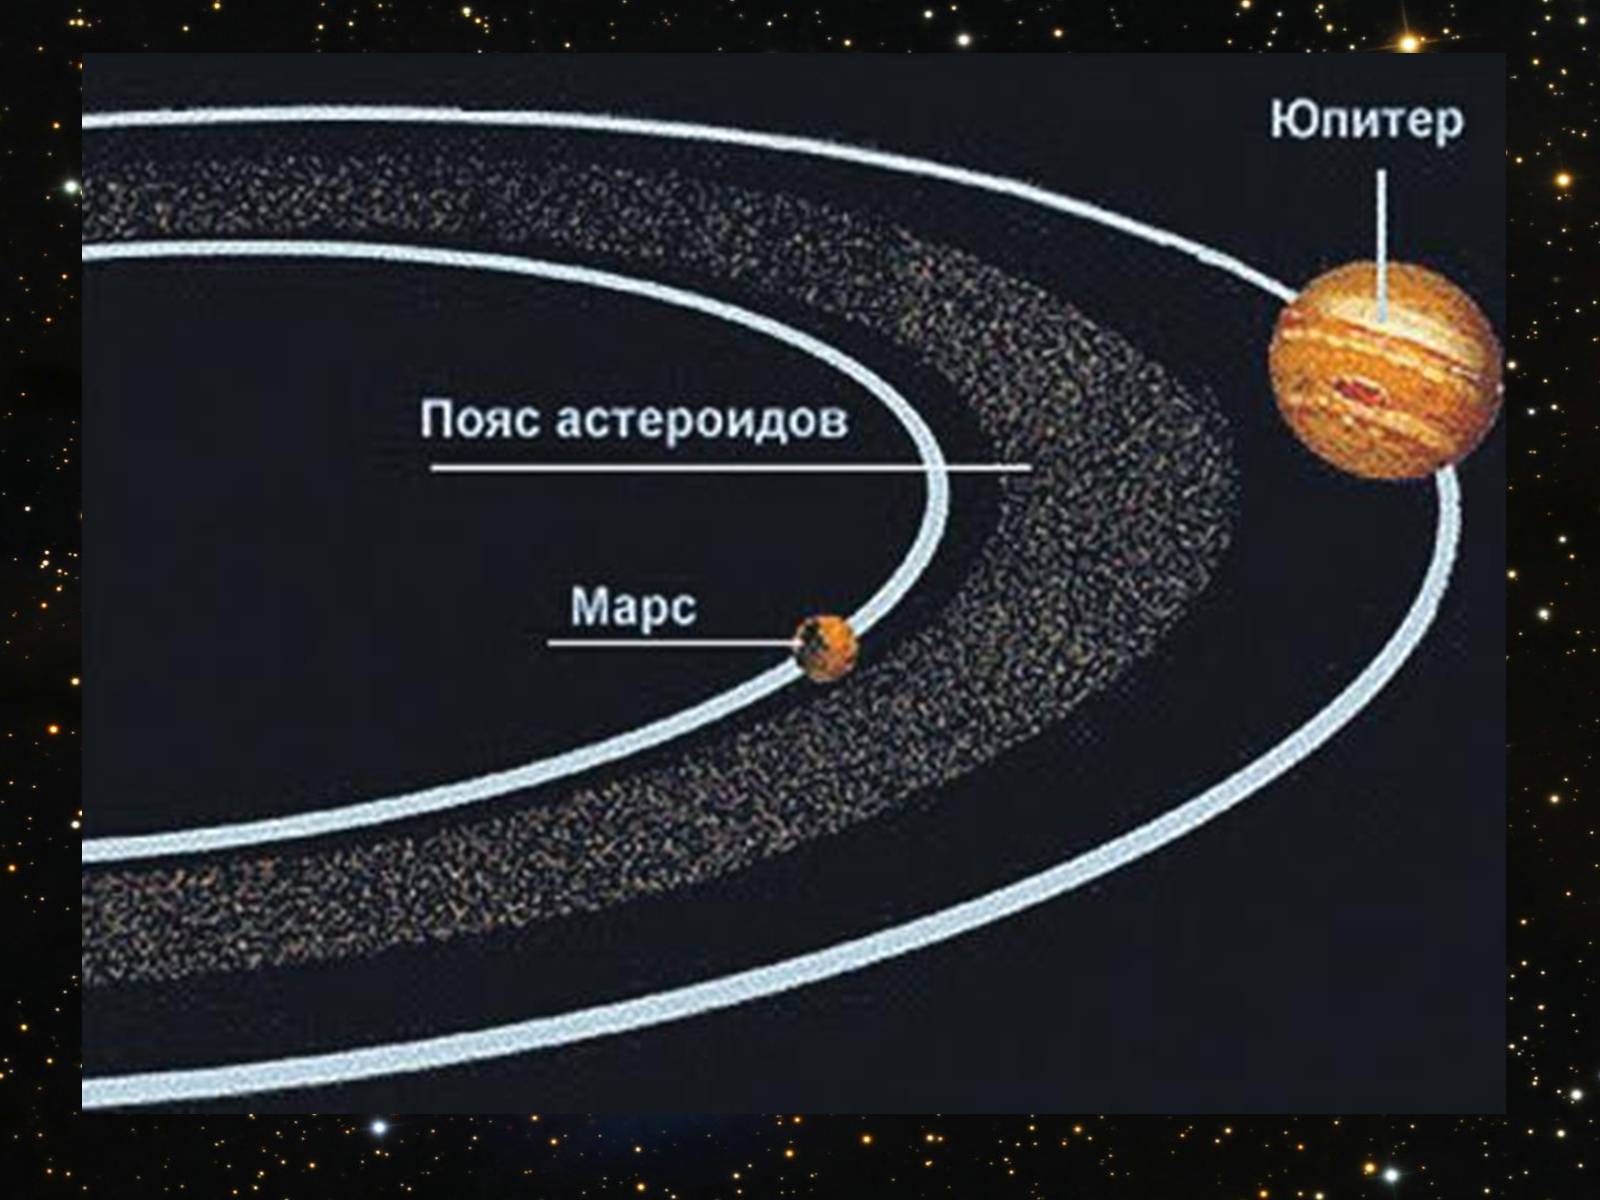 Пояса планет солнечной системы. Солнечная система пояс астероидов между Марсом. Пояс астероидов между Марсом и Юпитером. Солнечная система пояс астероидов между Марсом и Юпитером. Астероиды между орбитами Марса и Юпитера.